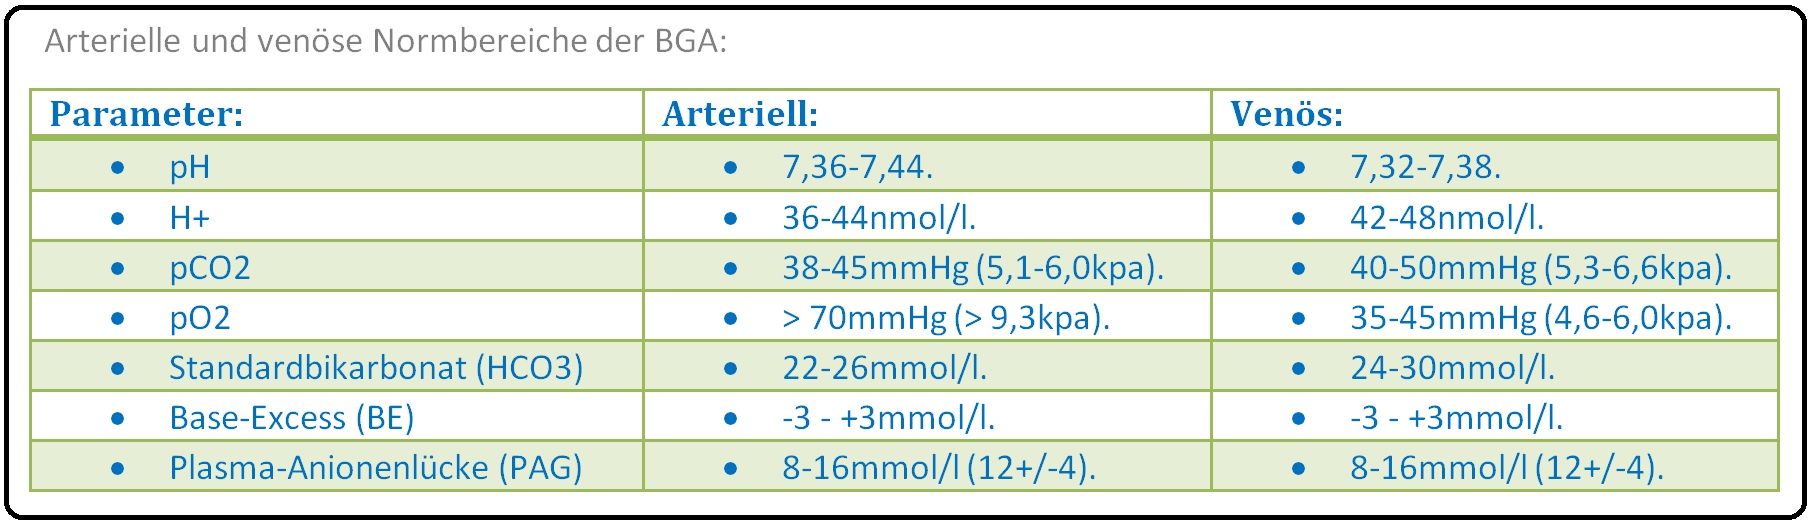 580 Arterielle und venöse Normbereiche der BGA